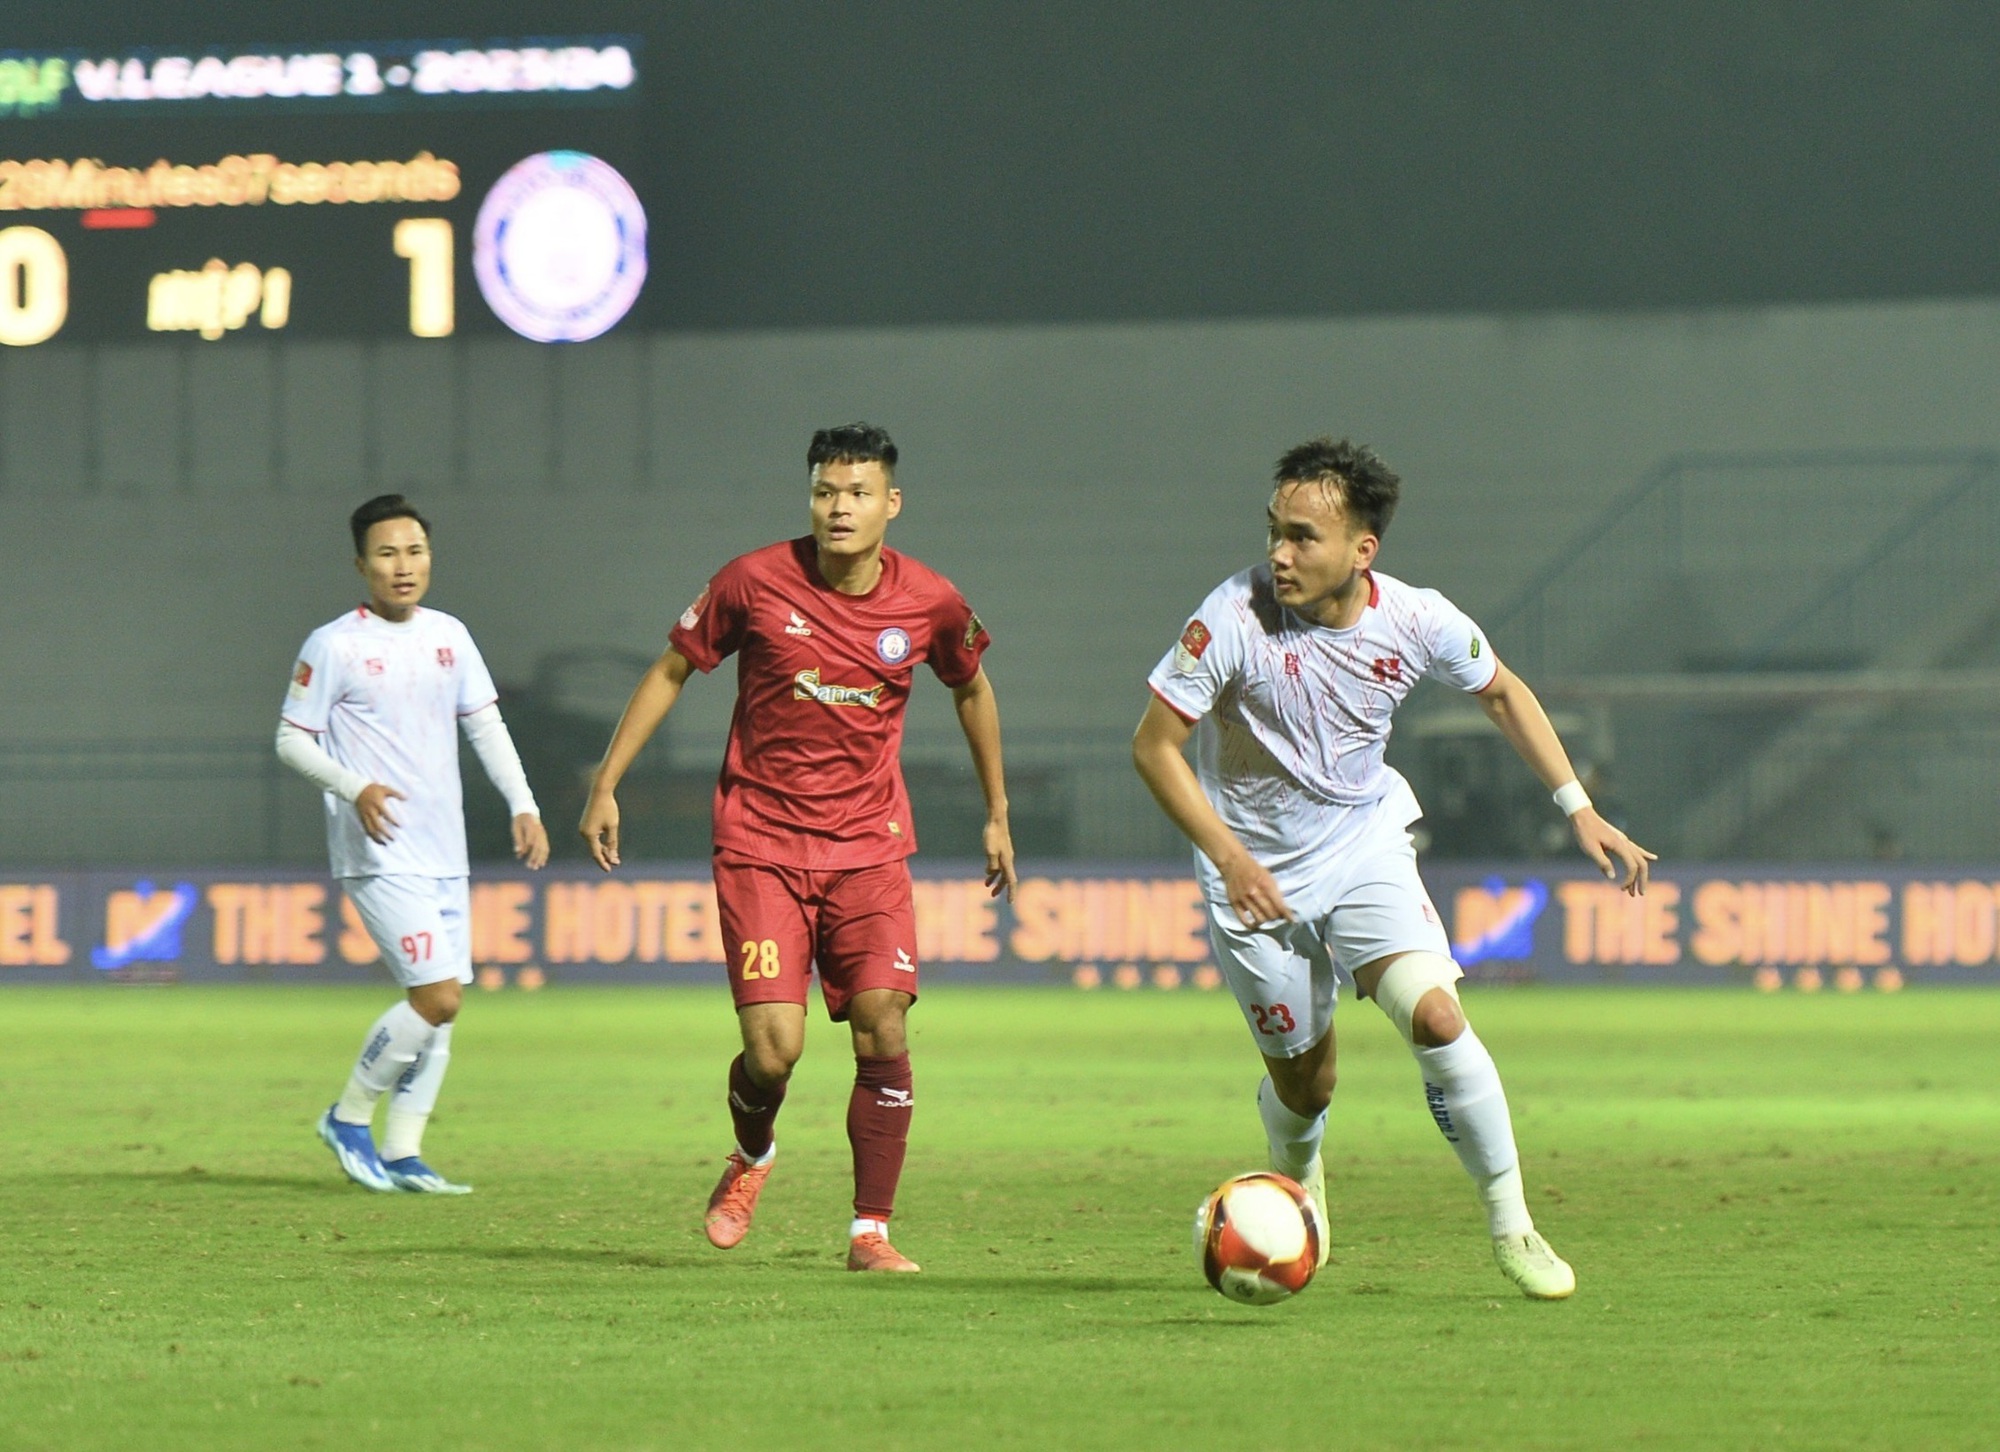 V-League: CLB Khánh Hòa chơi hay, đội Hải Phòng ngược dòng ấn tượng để vào tốp 4 - Ảnh 2.